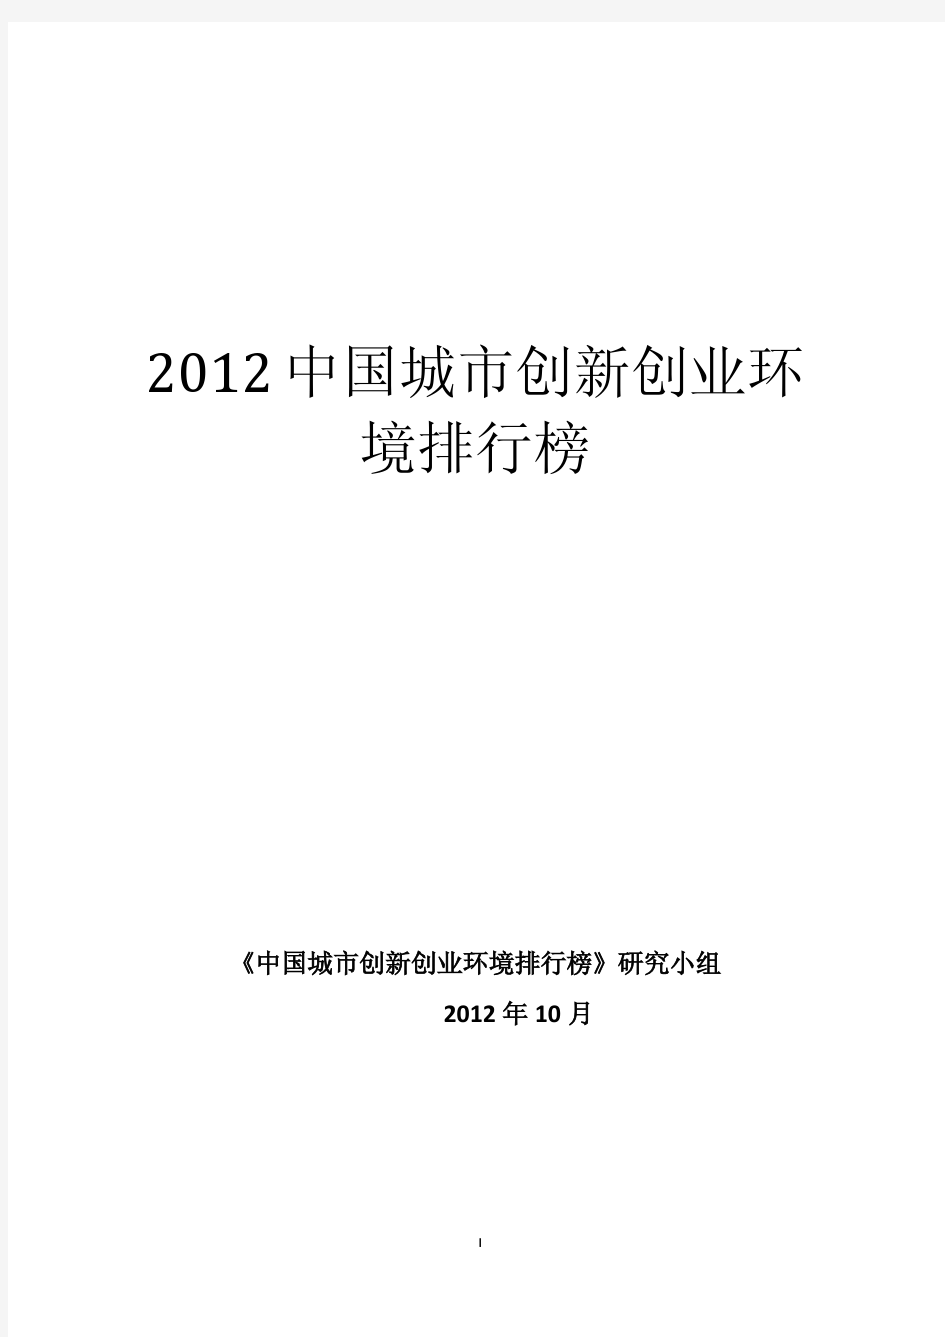 2012年中国城市创新创业环境排行榜发布